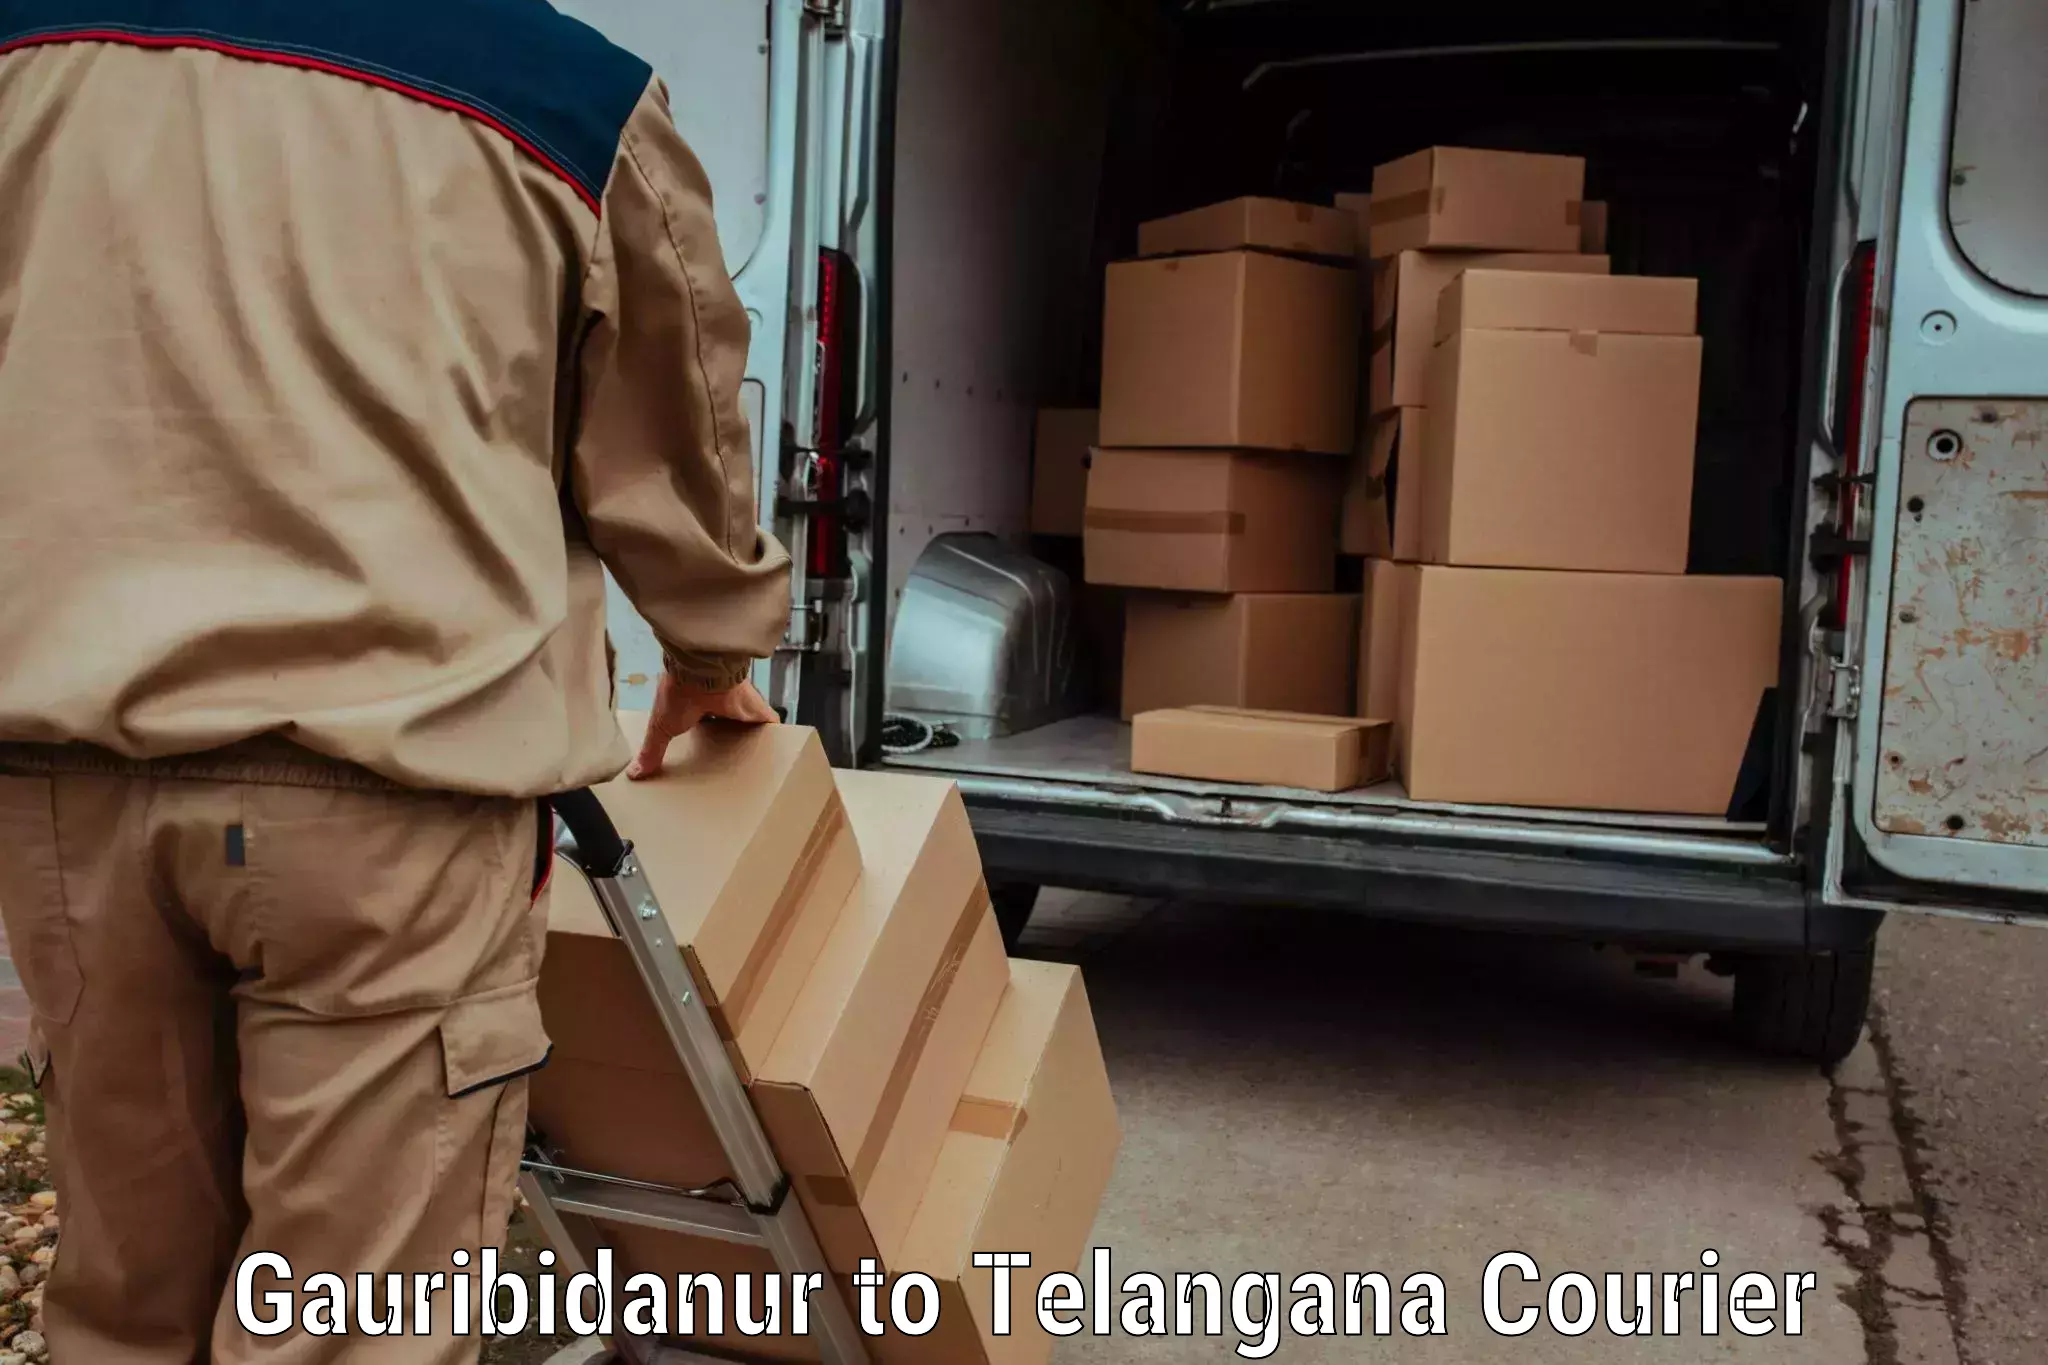 Efficient parcel service Gauribidanur to Zahirabad